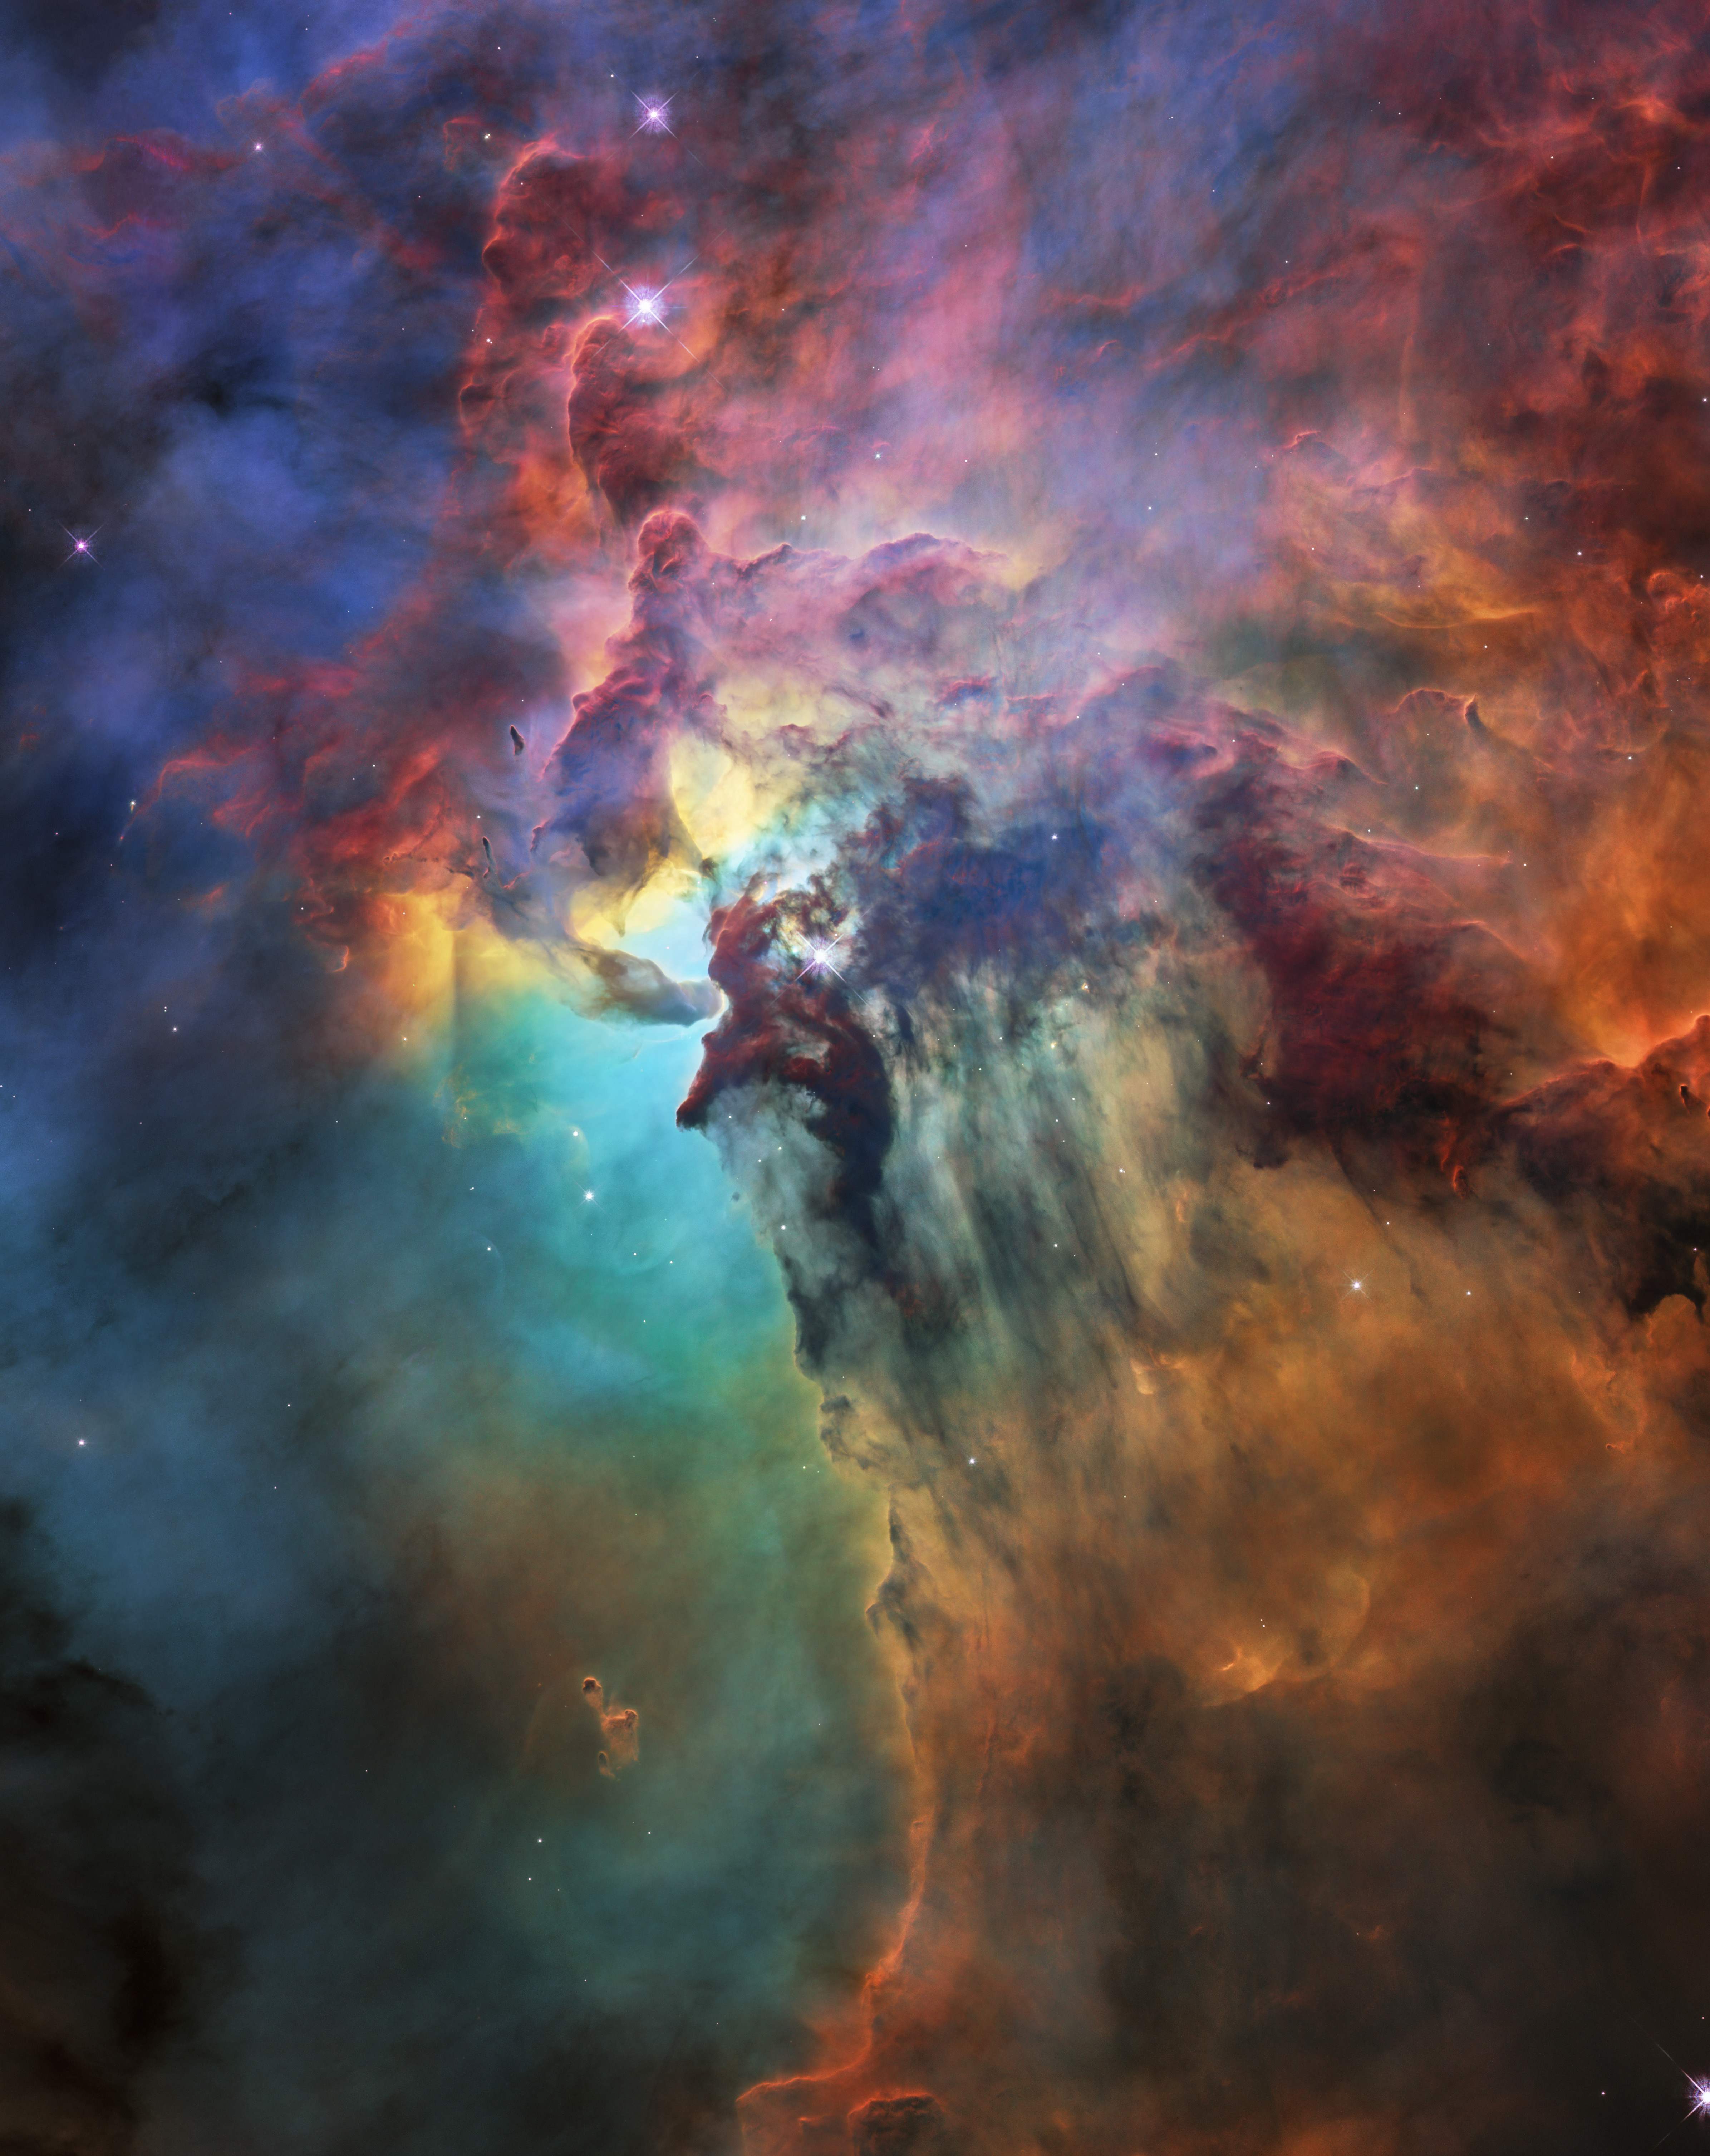 التقاط صورة لظاهرة كونية من تلسكوب هابل الفضائي التابع لناسا